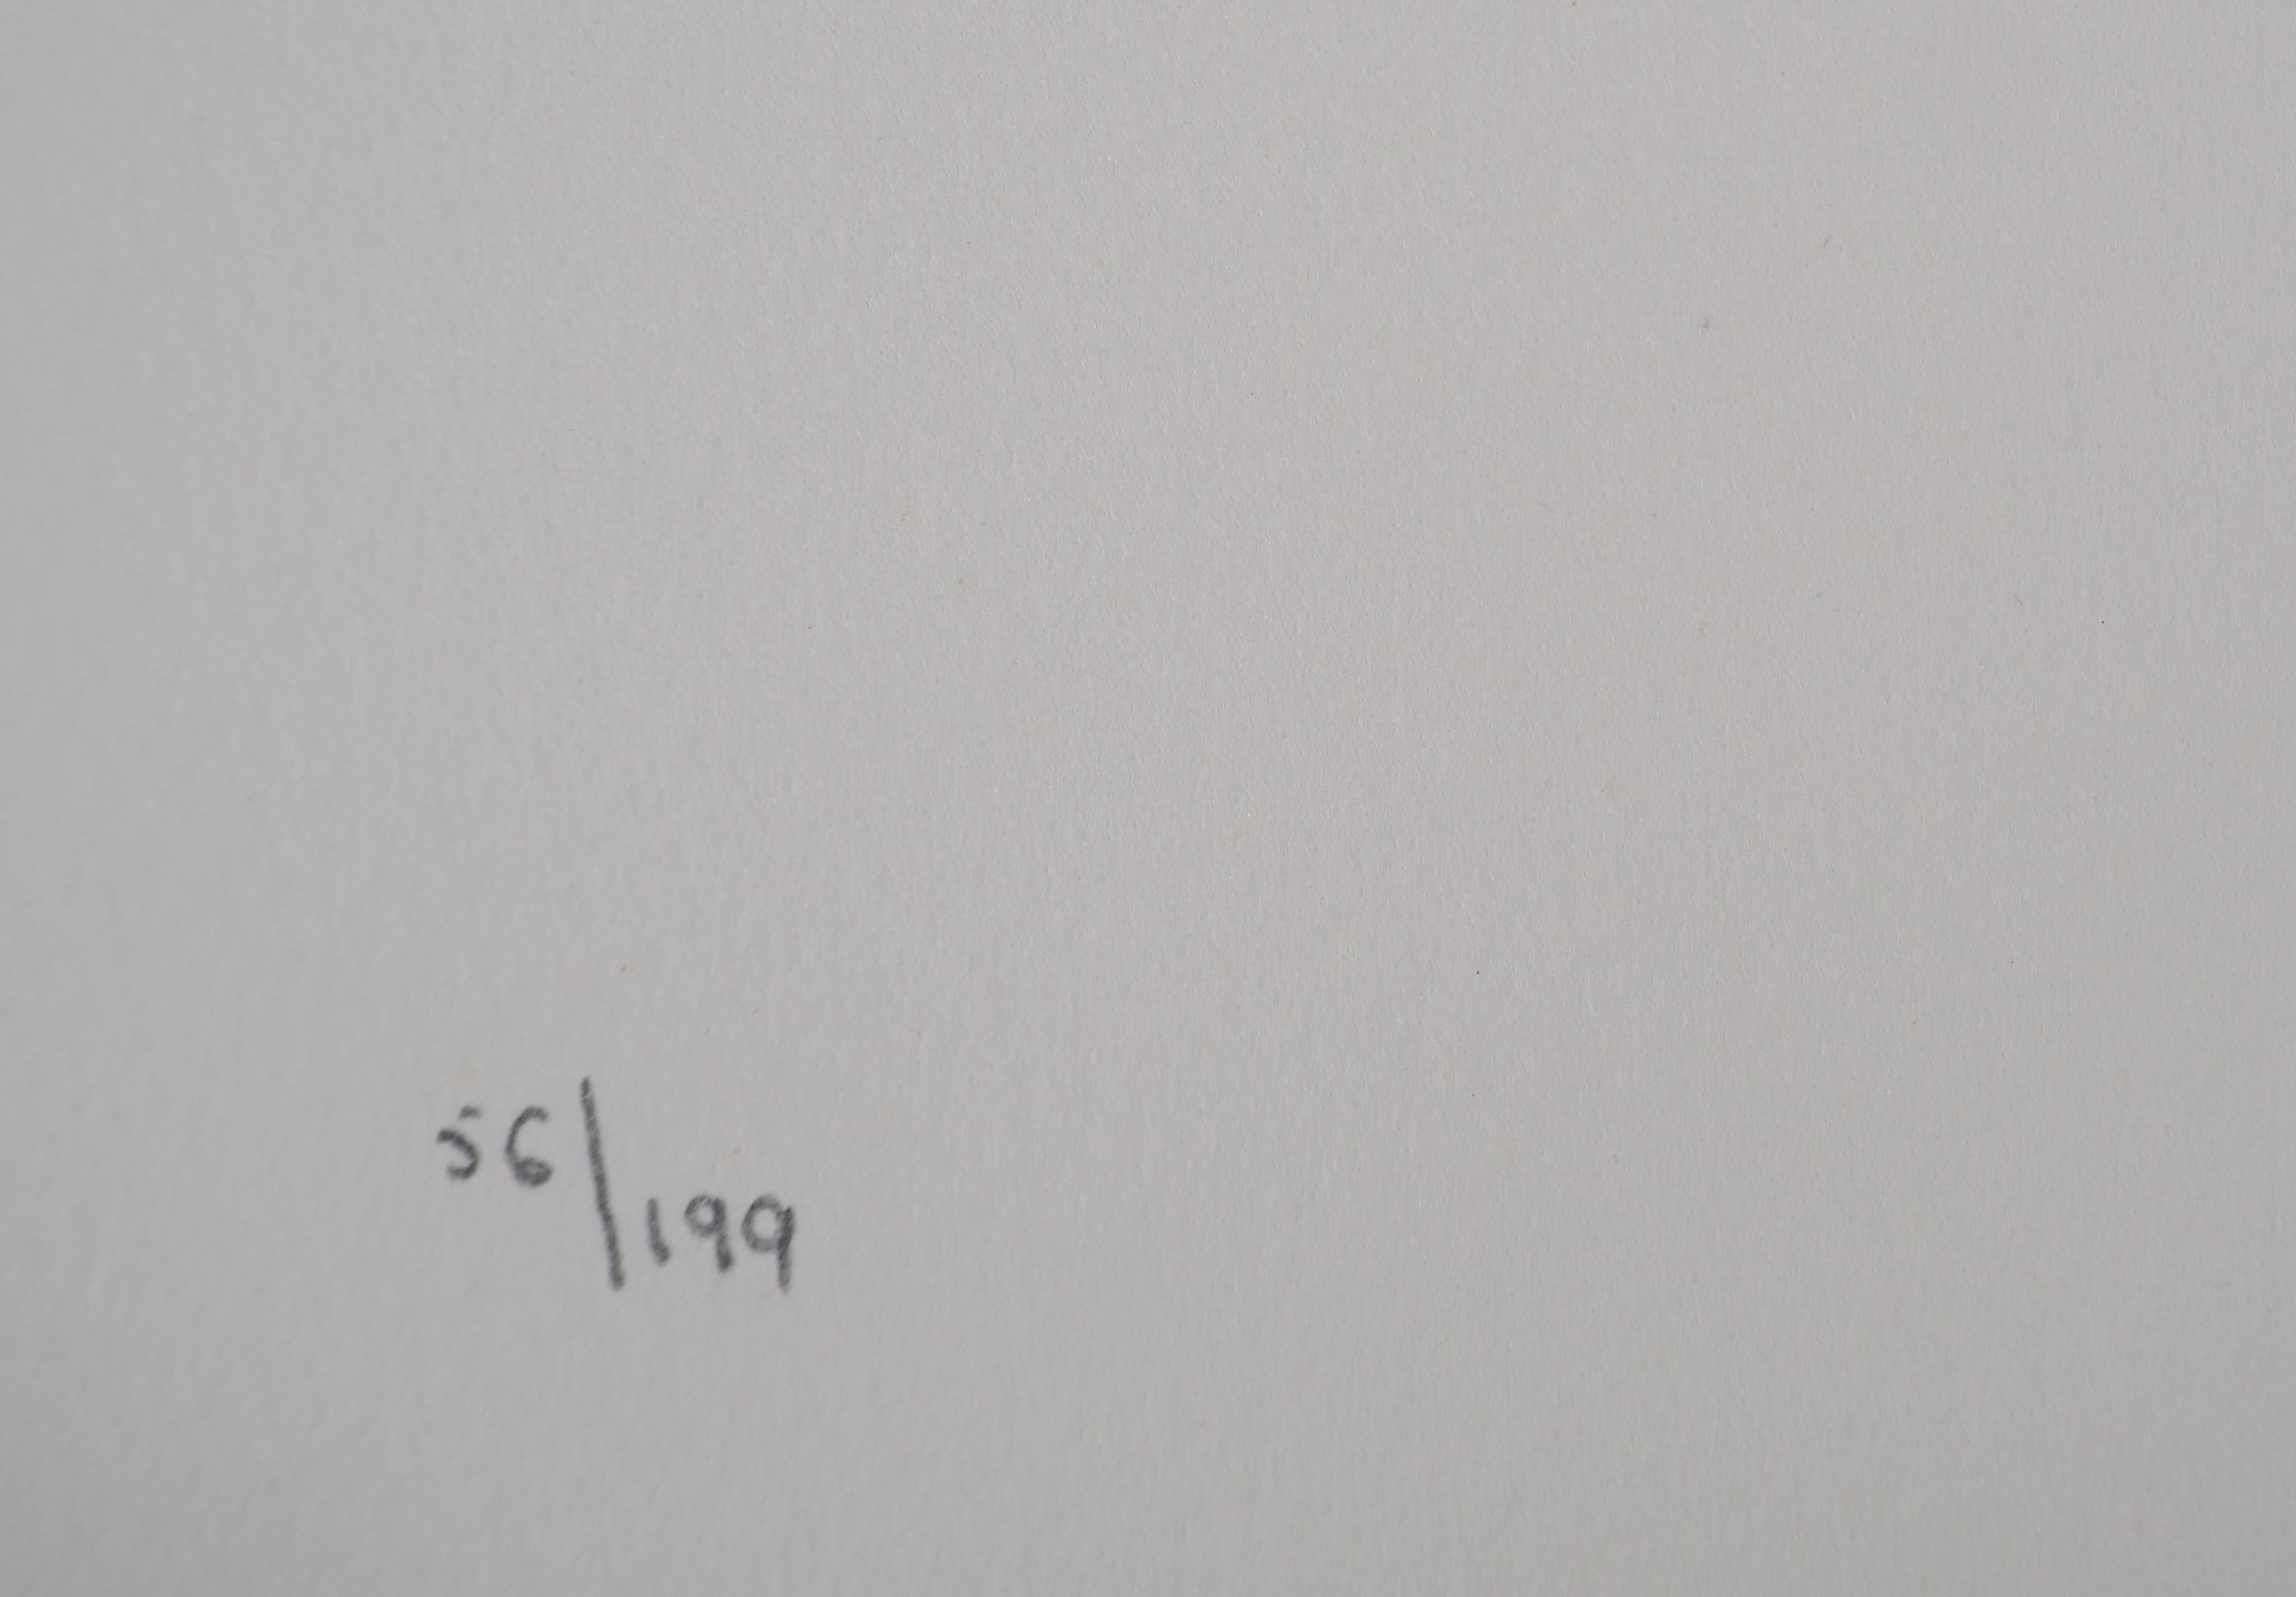 Jules Perahim (1914-2008)
Chasseur à la hache, 1974

Lithographie originale
Signé au crayon par l'artiste.
Numéroté / 199
Sur vellum d'Arches 56 x 38 cm (c. 22 x 15 inches)

INFORMATION : Extrait du portfolio 